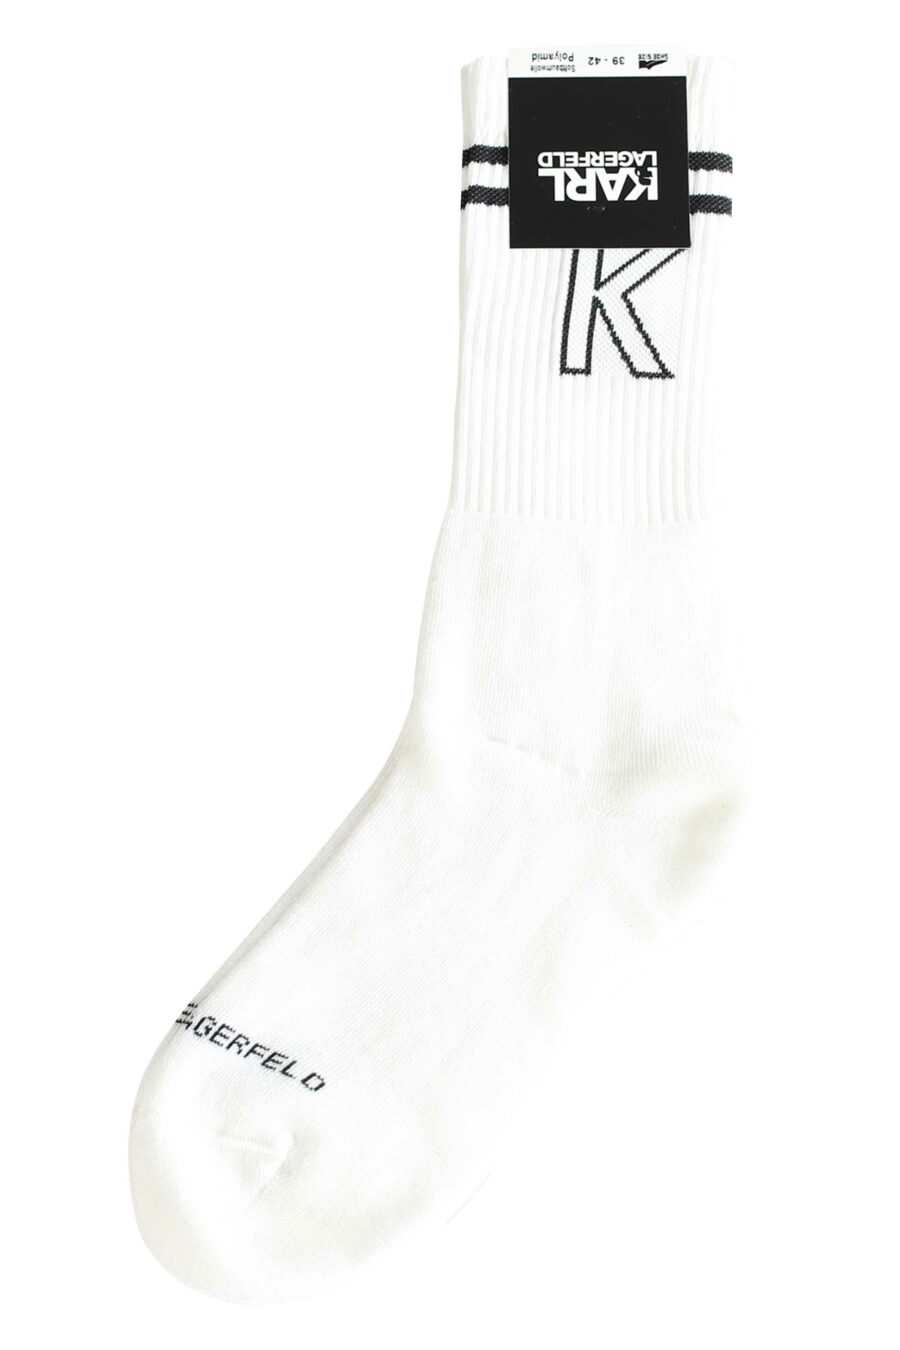 Weiße Socken mit Logo und schwarzen horizontalen Linien - 4062226294454